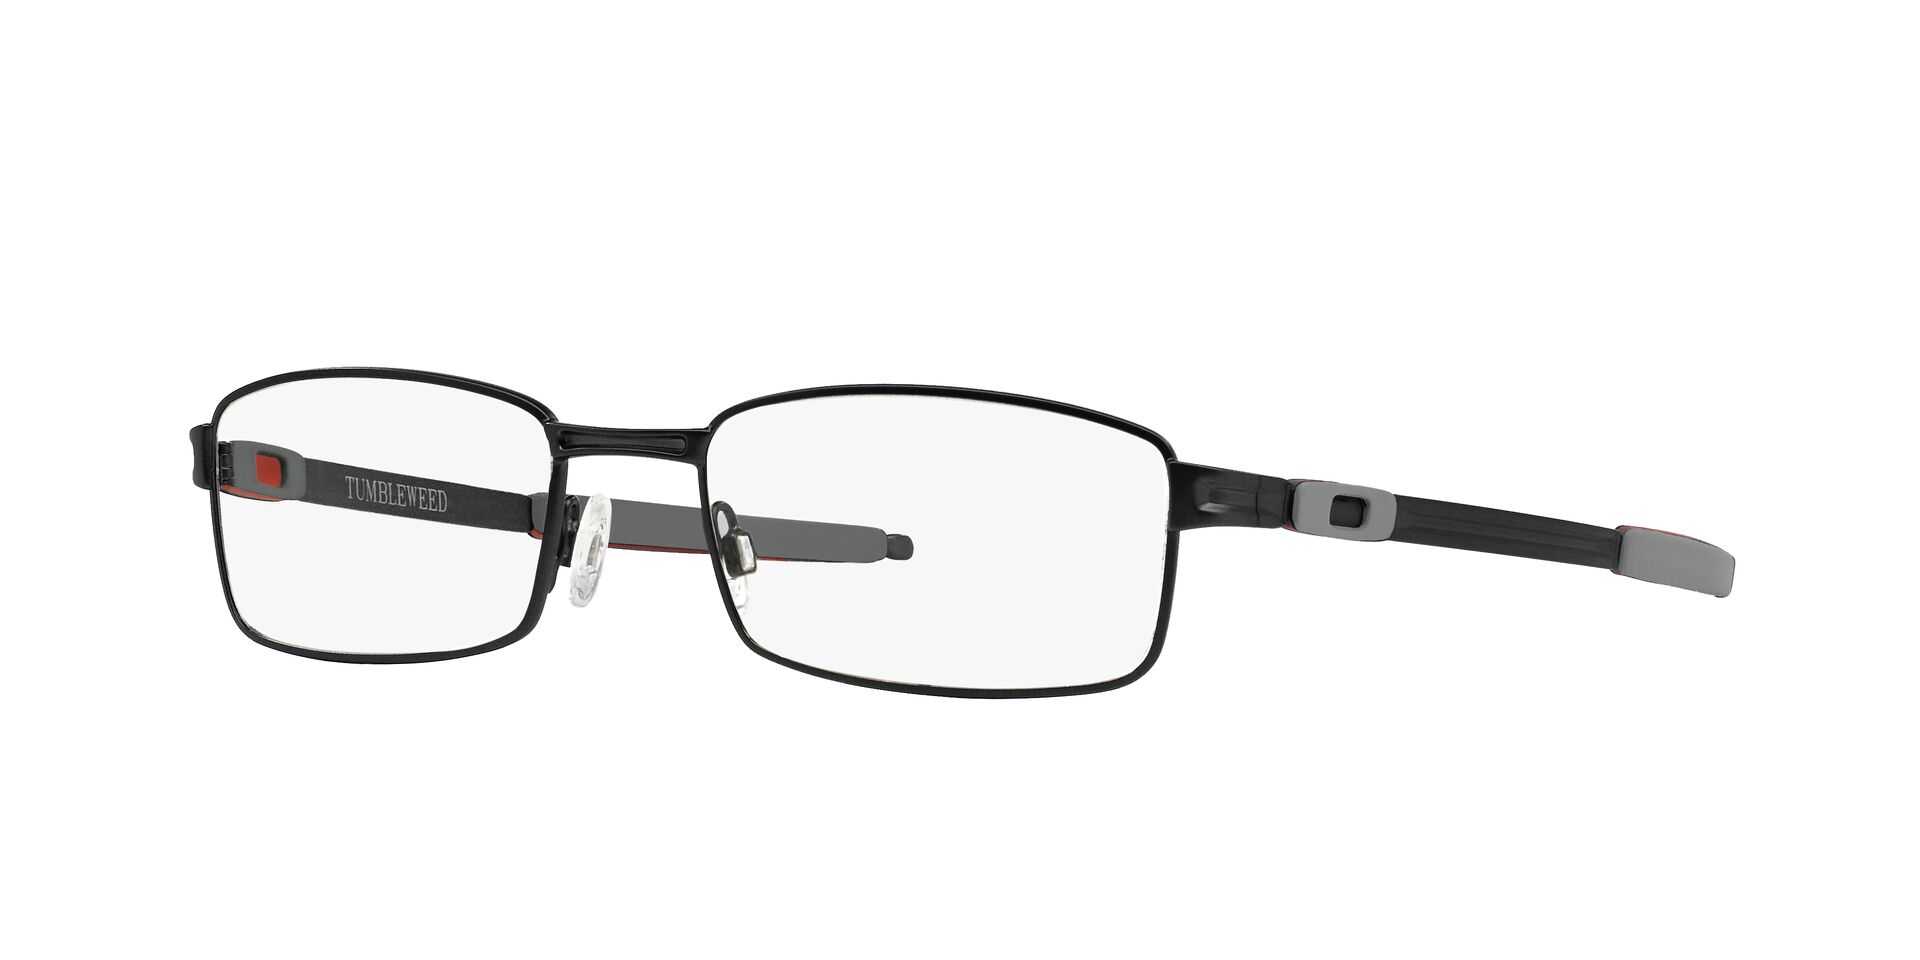 Eyeglasses OAKLEY OX 3112 311201 TUMBLEWEED 53/18 Man Noir rectangle frames  Full Frame Glasses Classic 53mmx18mm 158$CA